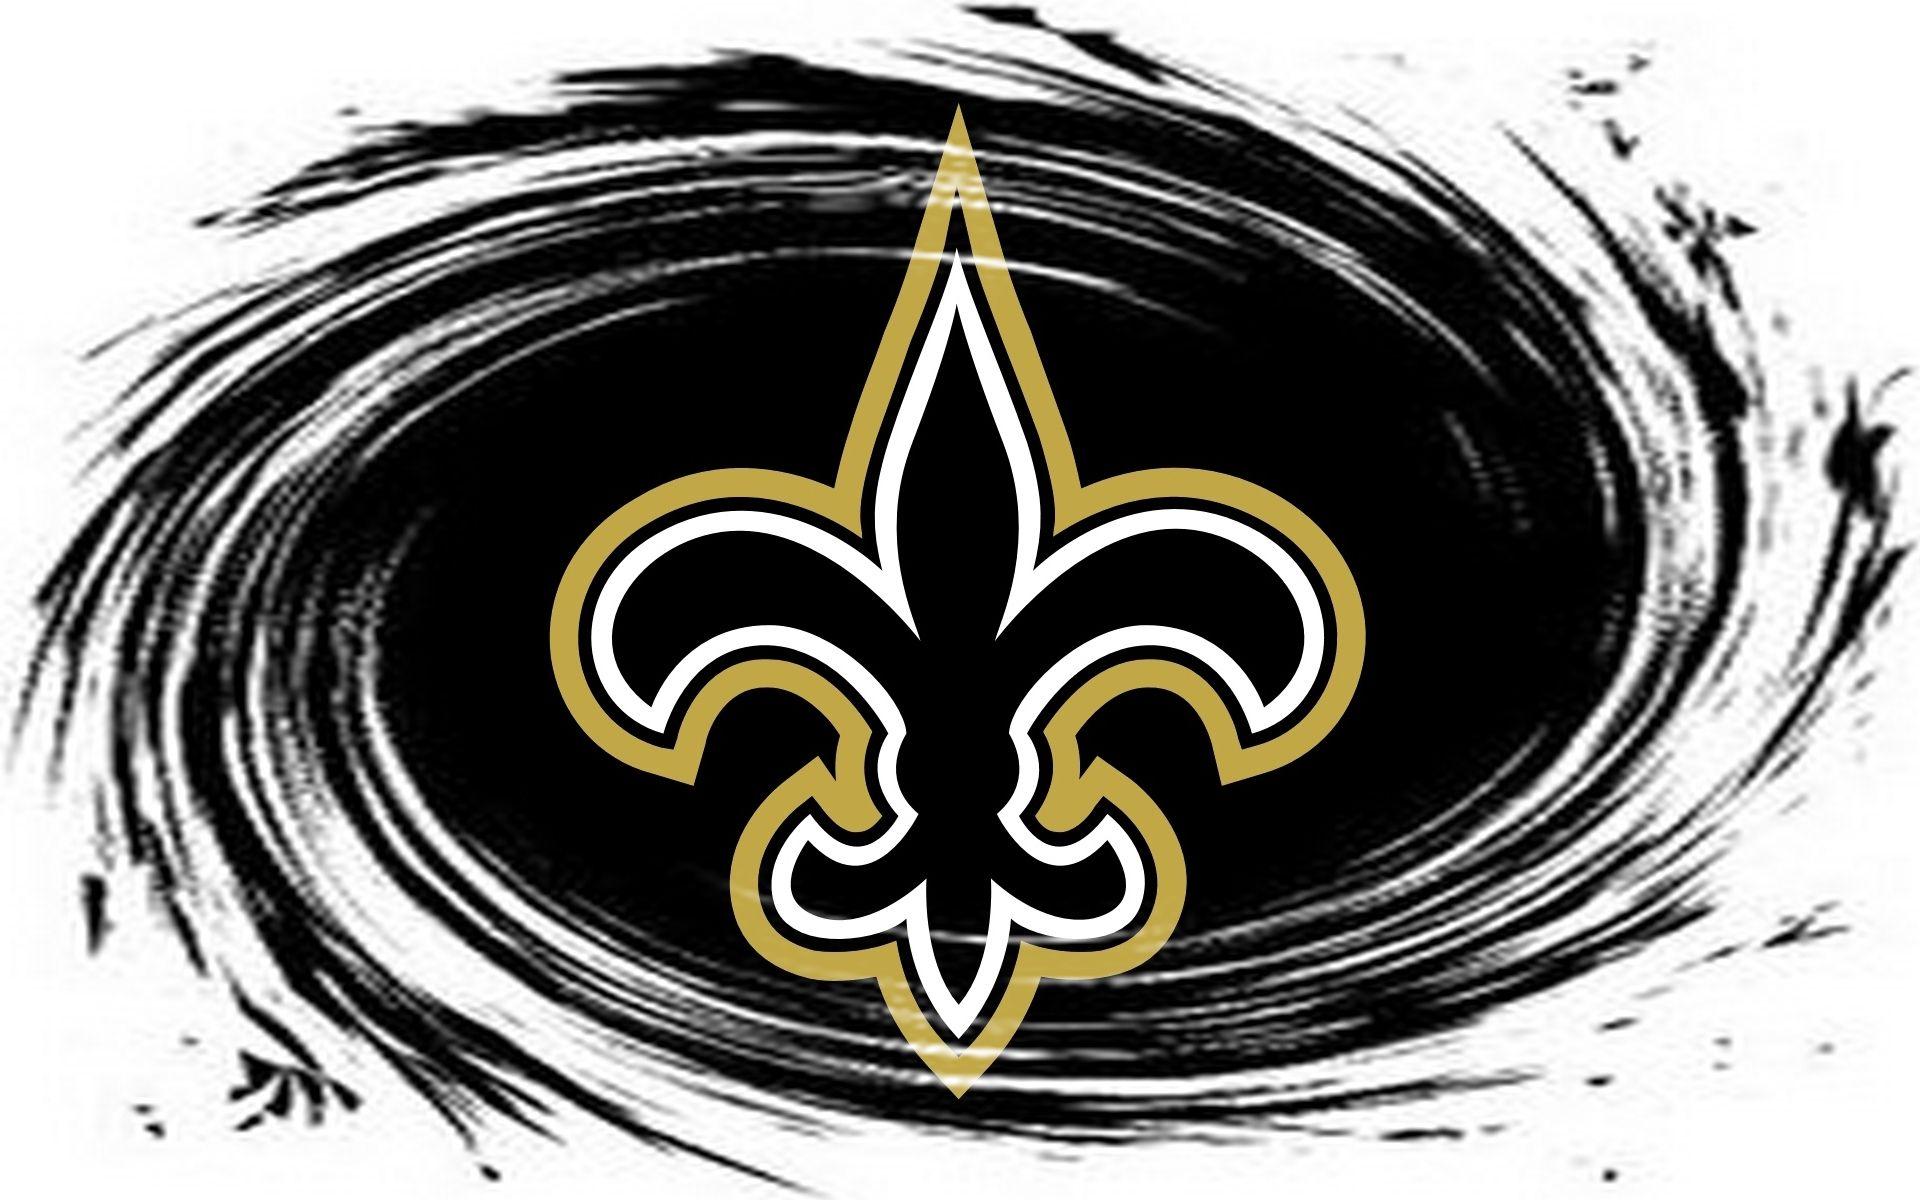 NFL Saints Logo - New Orleans Saints / Nfl 1920x1200 Wide Image